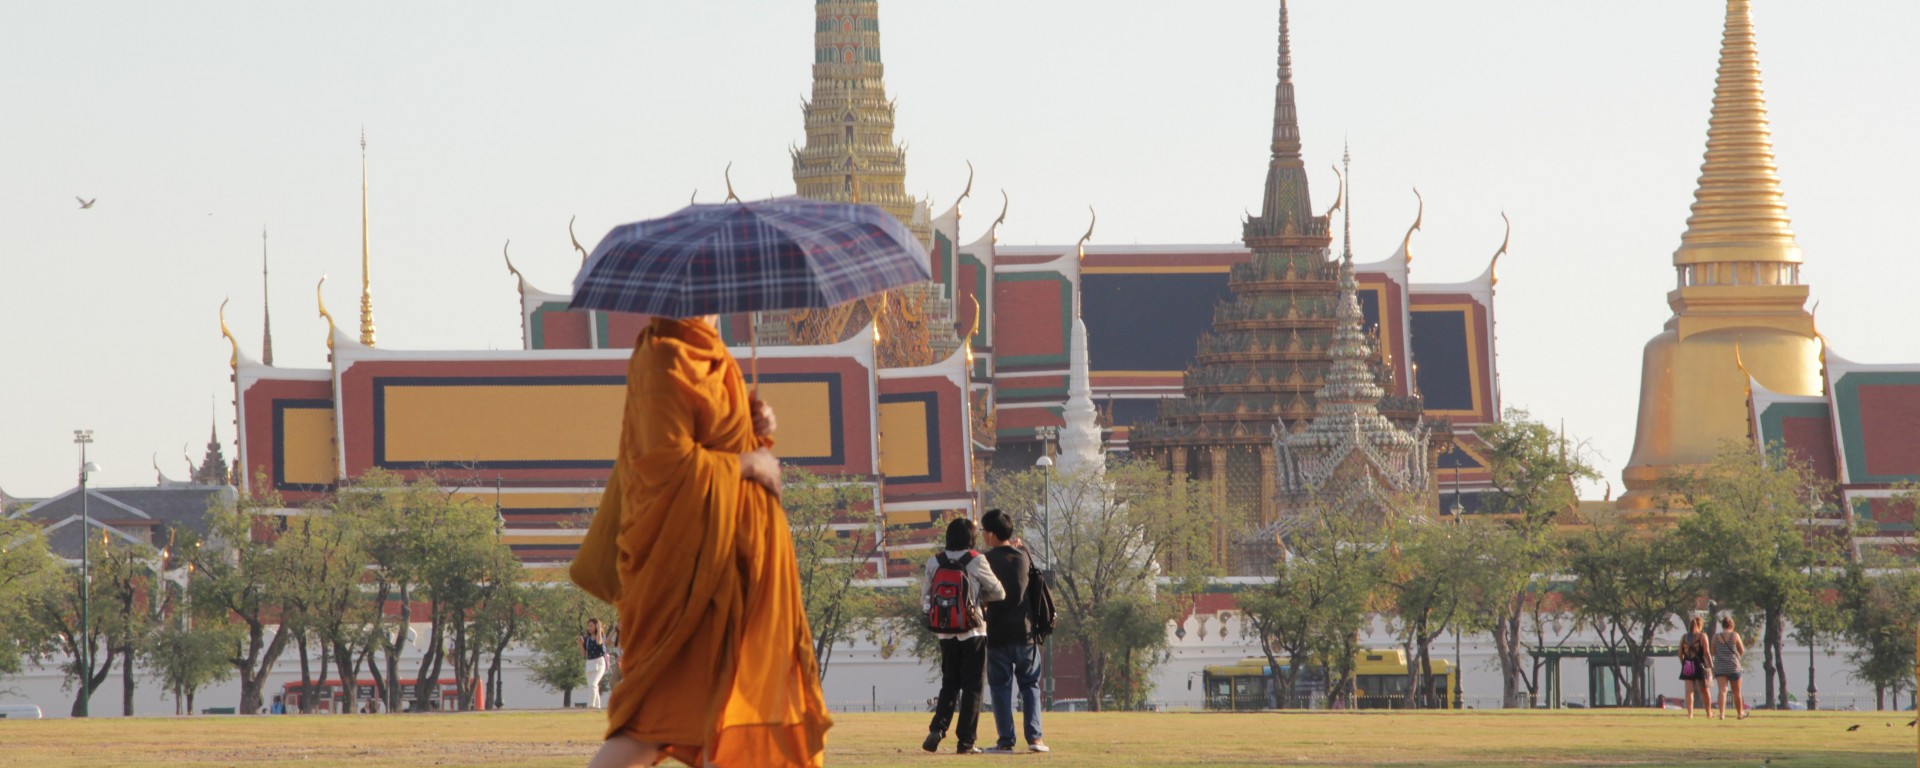 Un moine devant le haut lieu touristique de Bangkok : le temple Wat Phra Kaew et le grand palace (© Jérôme Decoster).